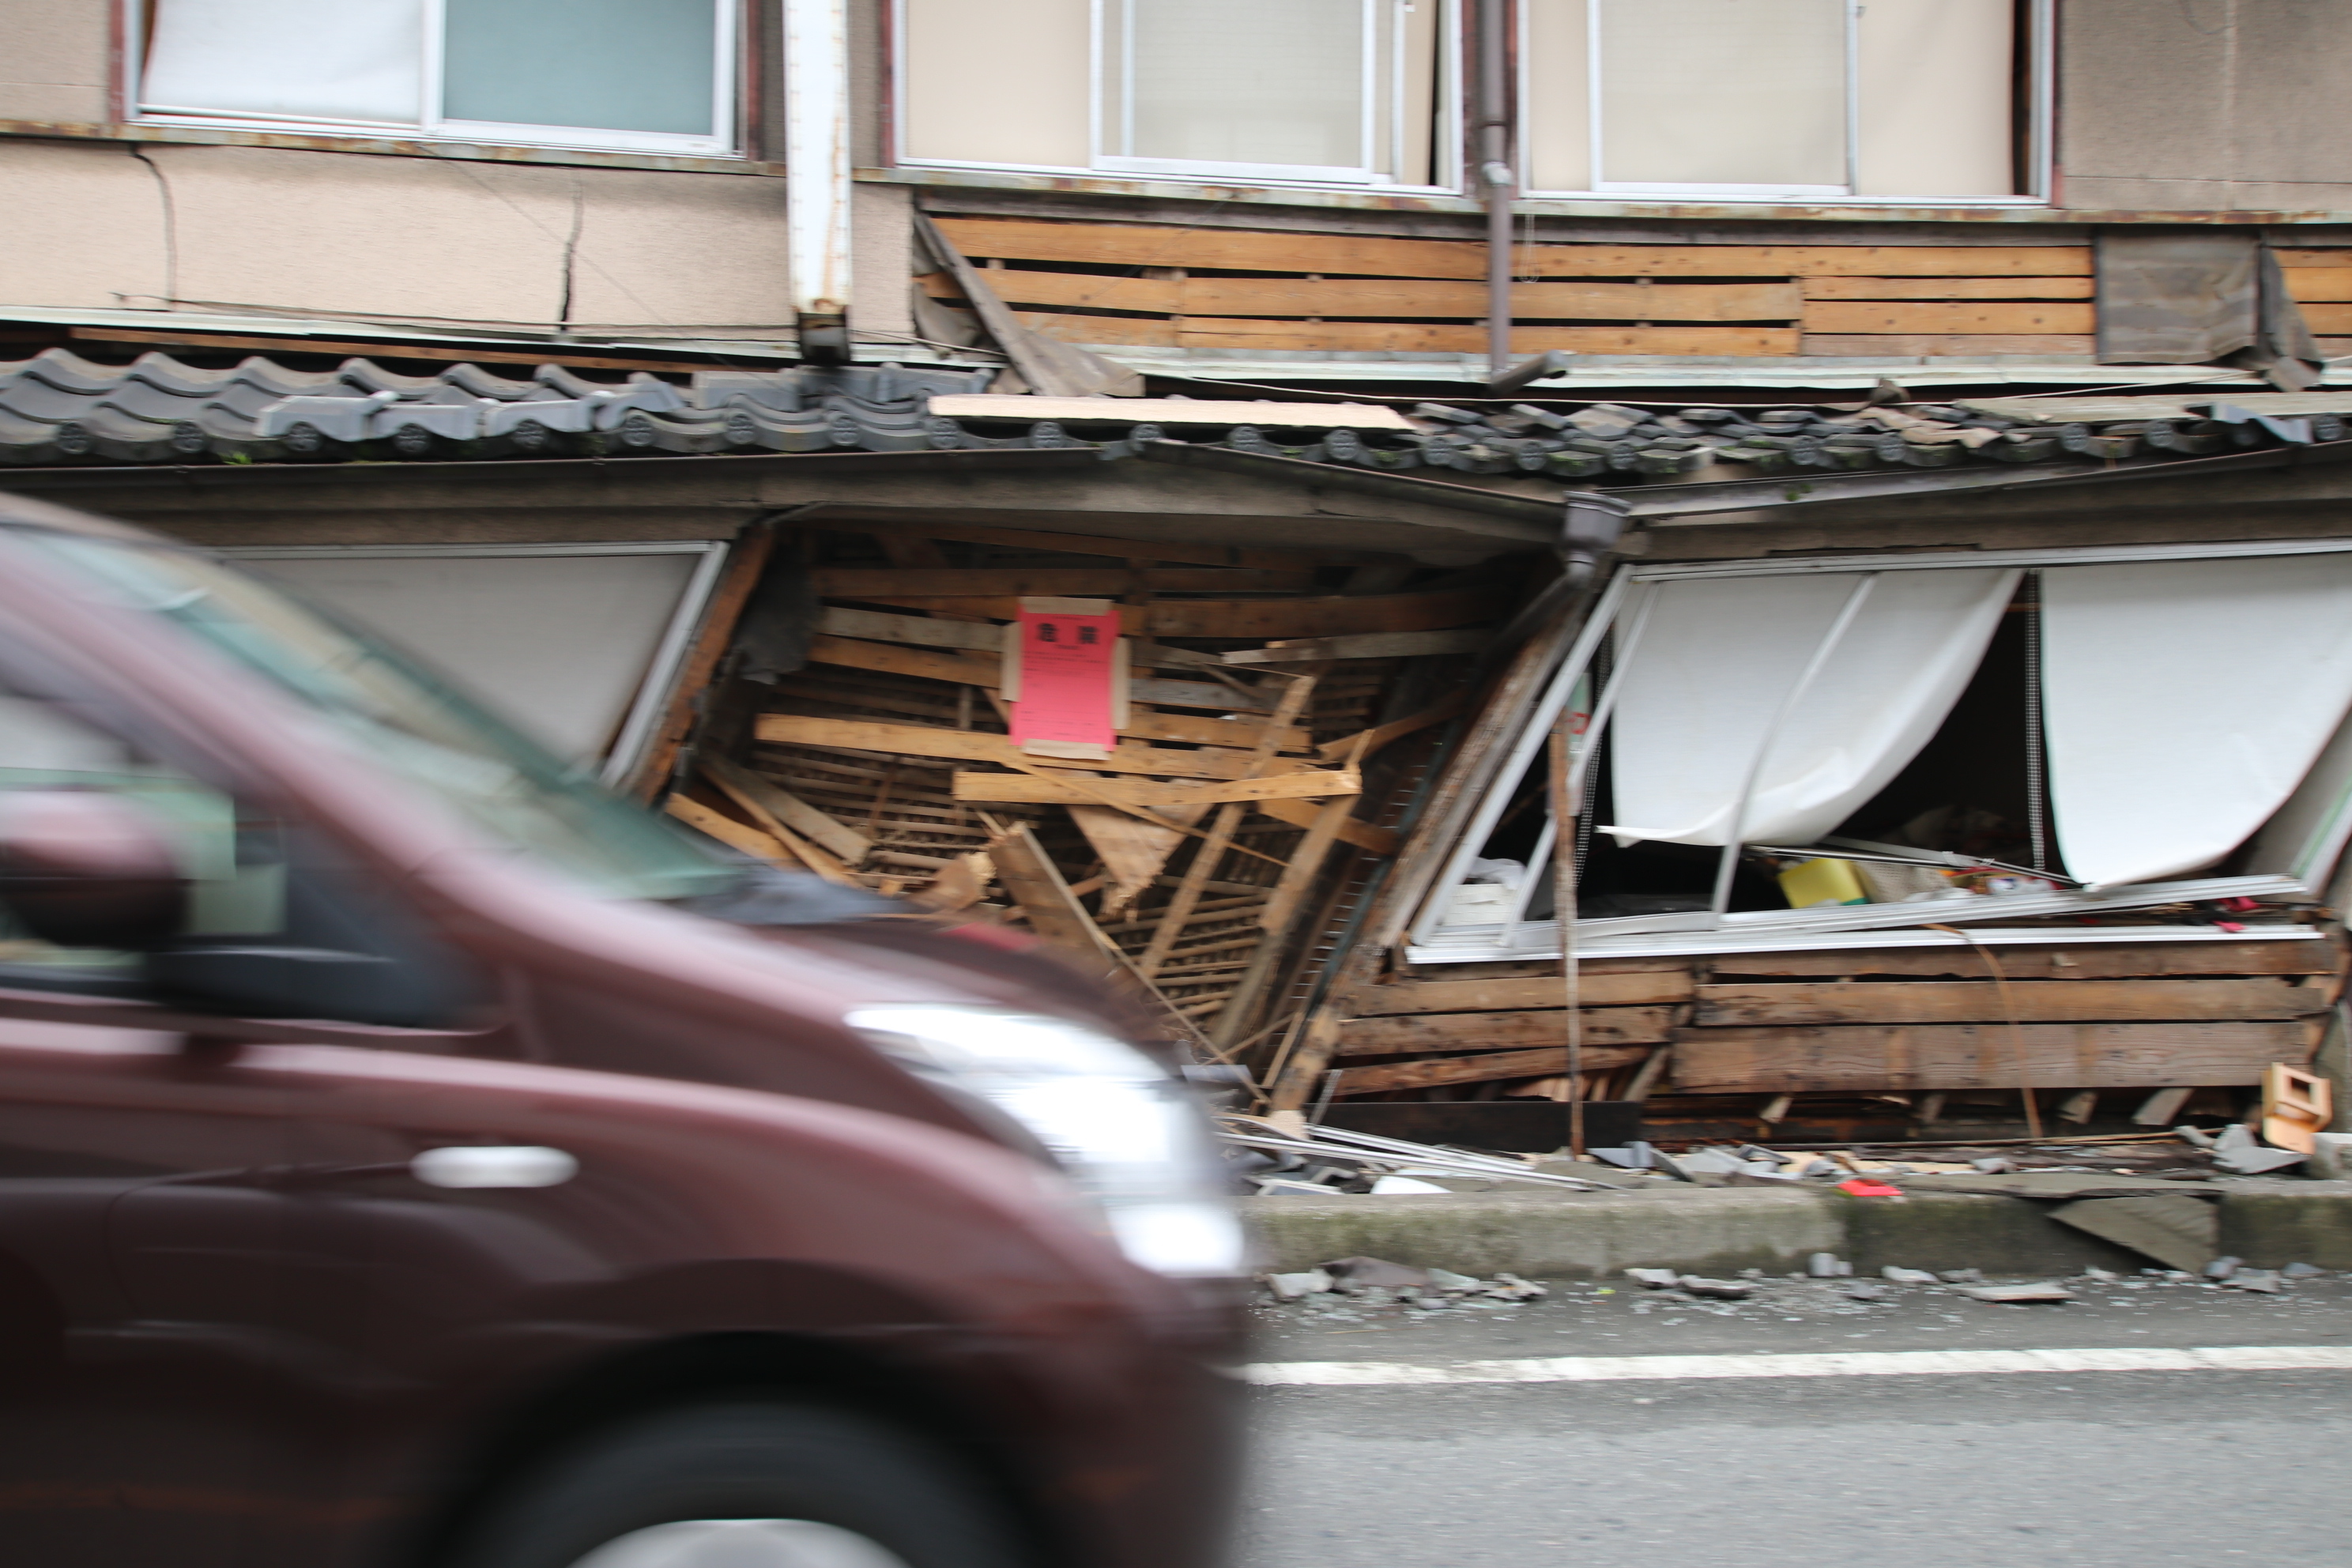 熊本地震 Photo Share 益城町編 レジリエンスな住宅は可能か 6月第1特集 熊本地震の検証 6人の専門家に聞く 教訓をどう生かす リスク対策 Com 新建新聞社